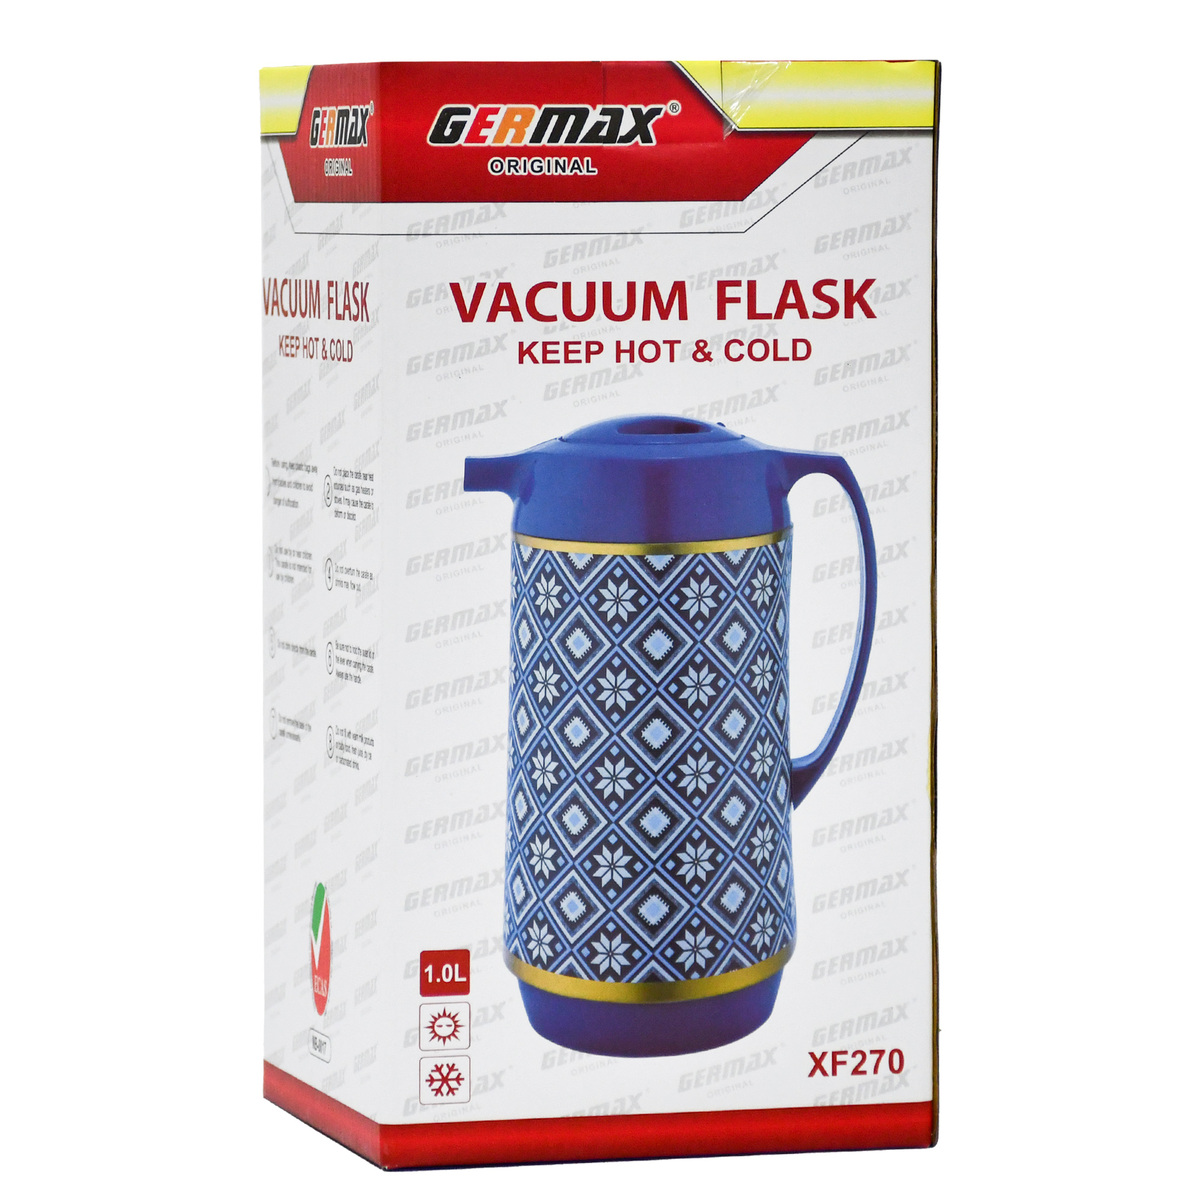 Germax Vacuum Flask1.0L XF270B